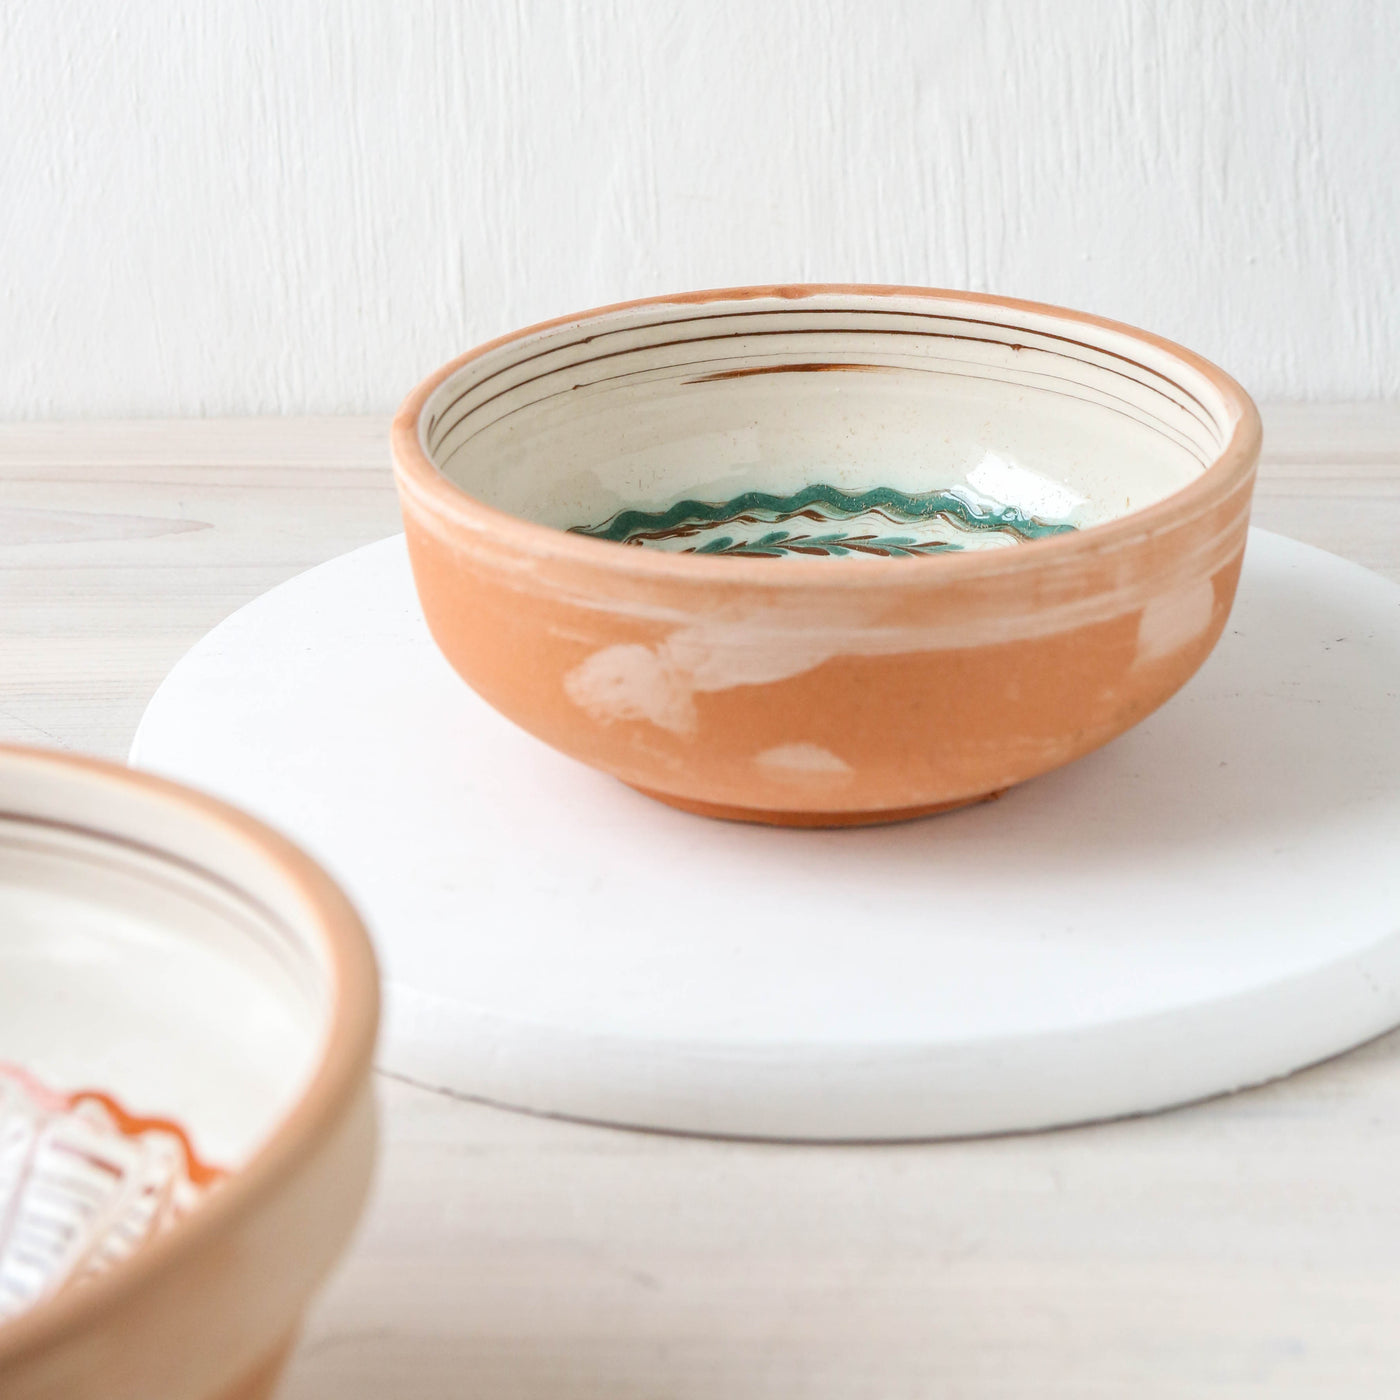 15cm Horezu Stoneware Serving Bowl - Cream Multi